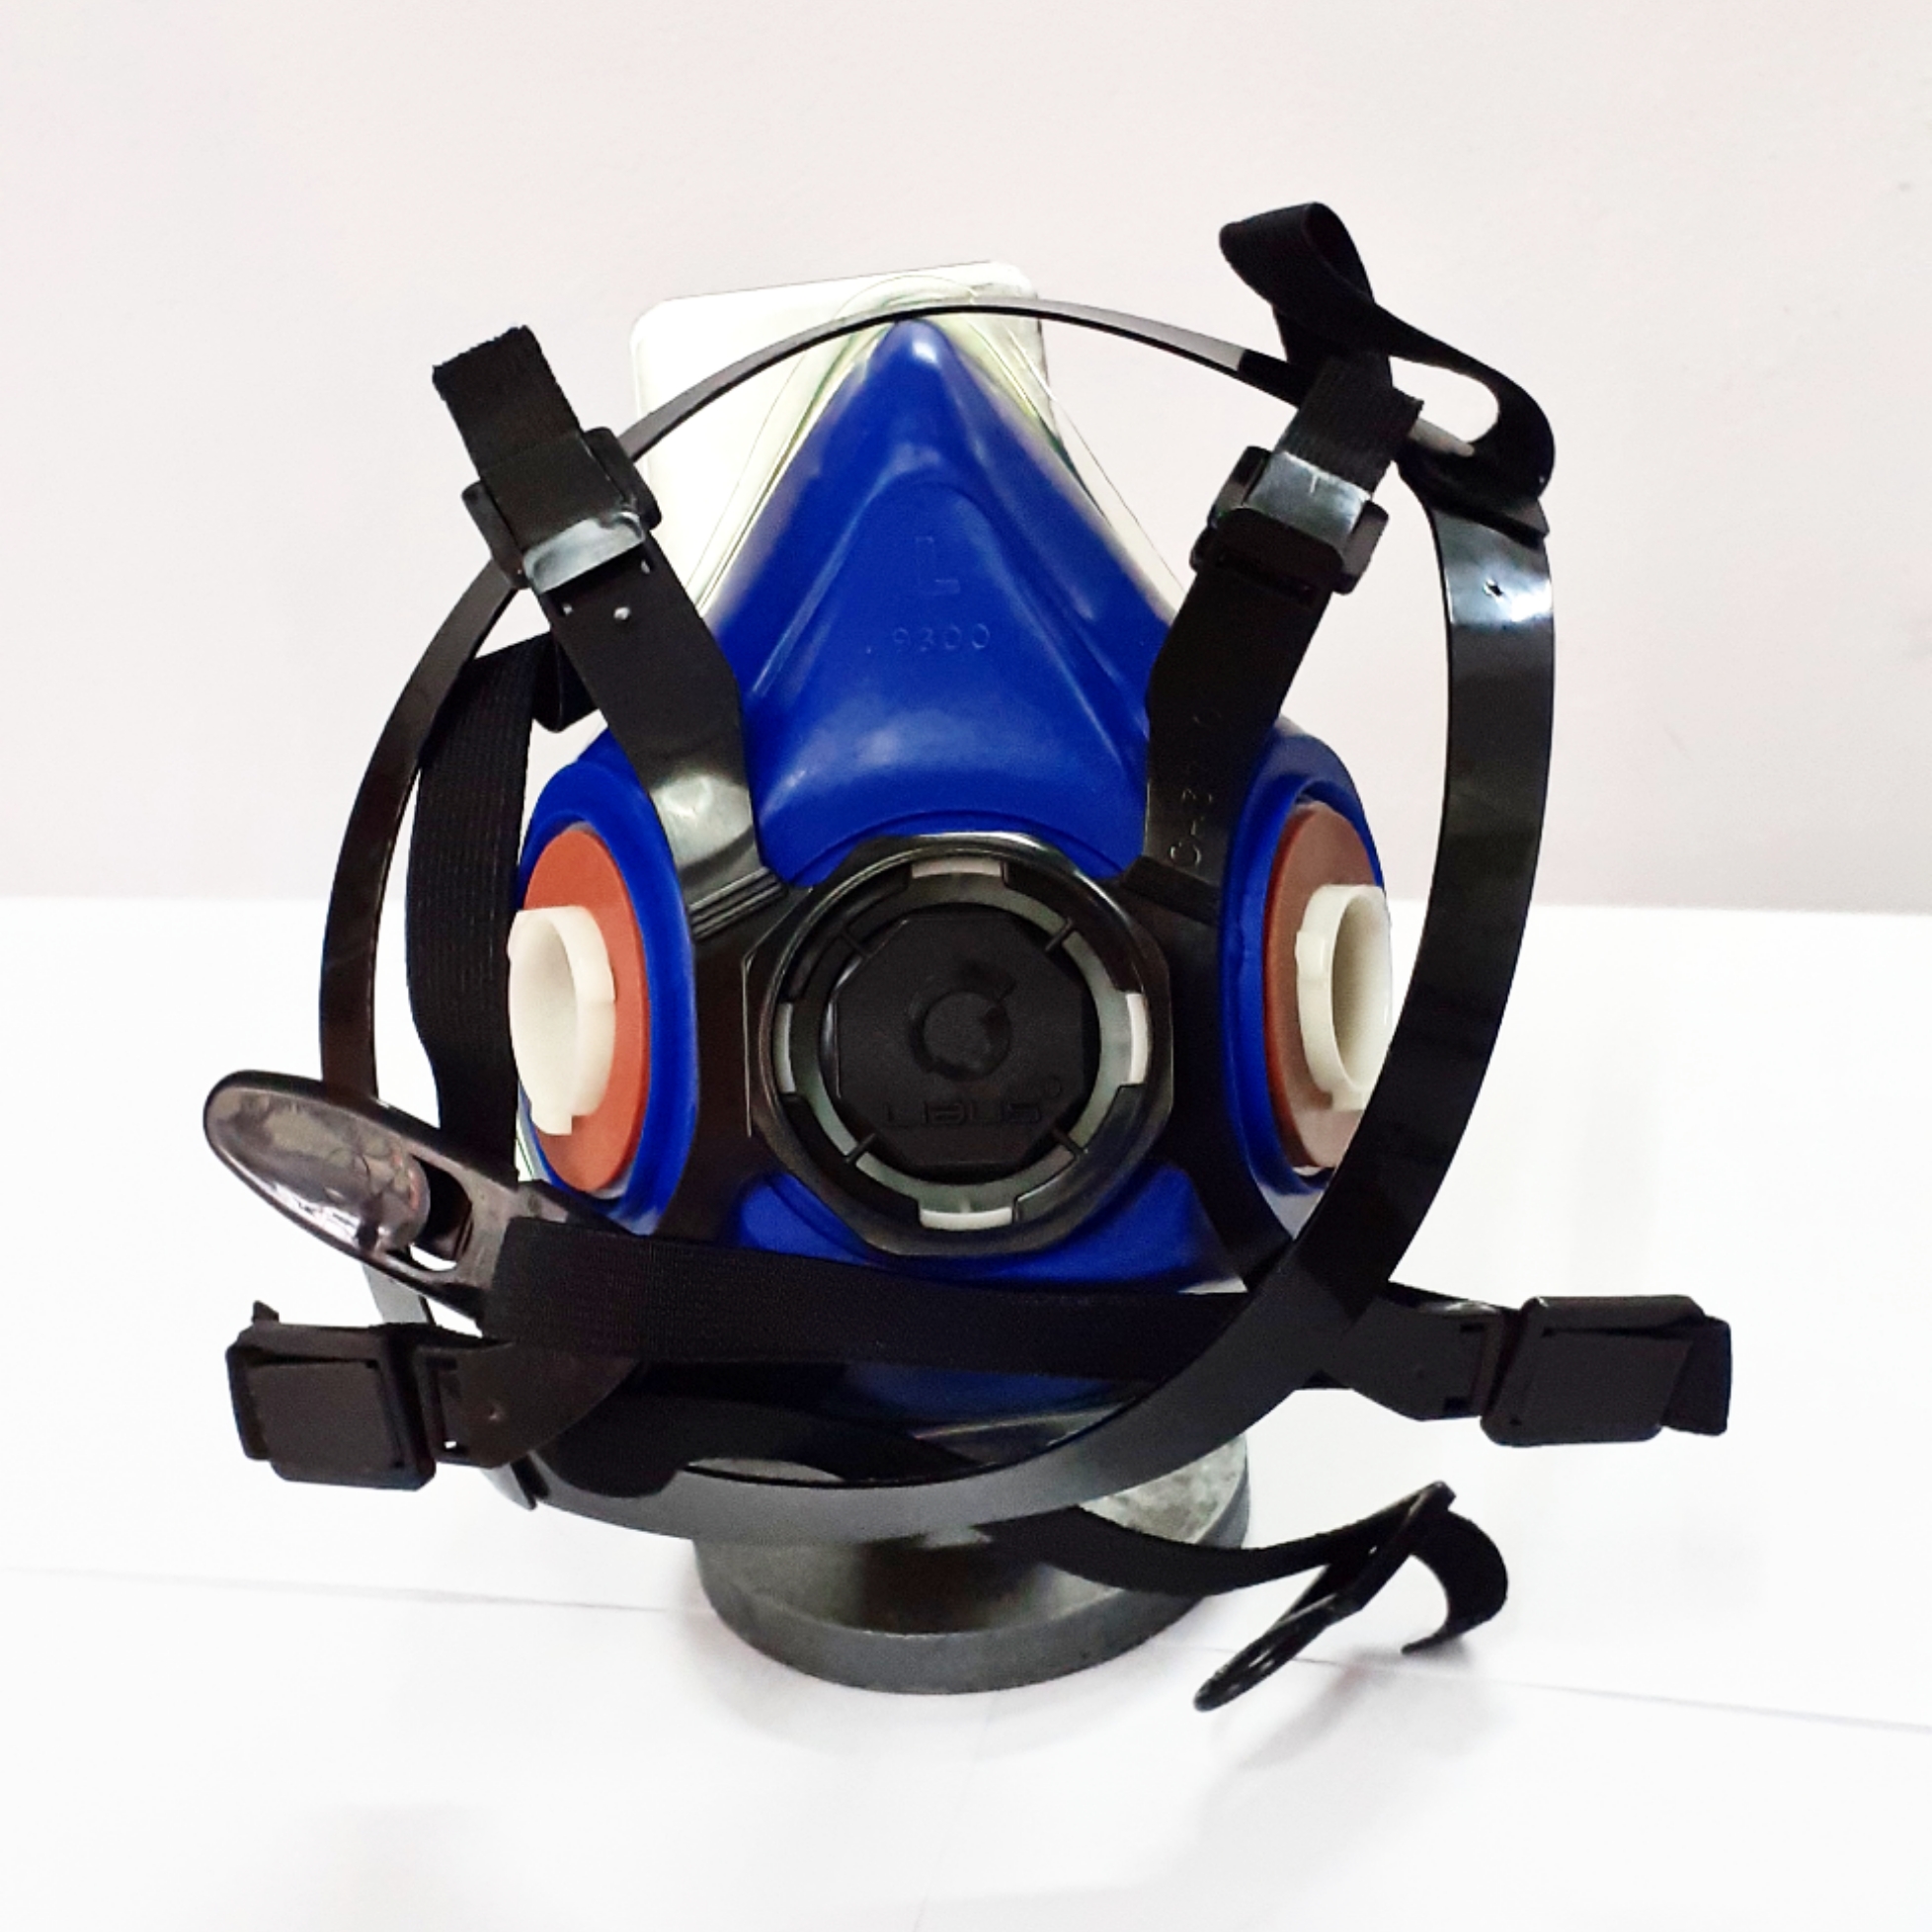 Máscara de protección respiratoria – Media cara – Serie 9000